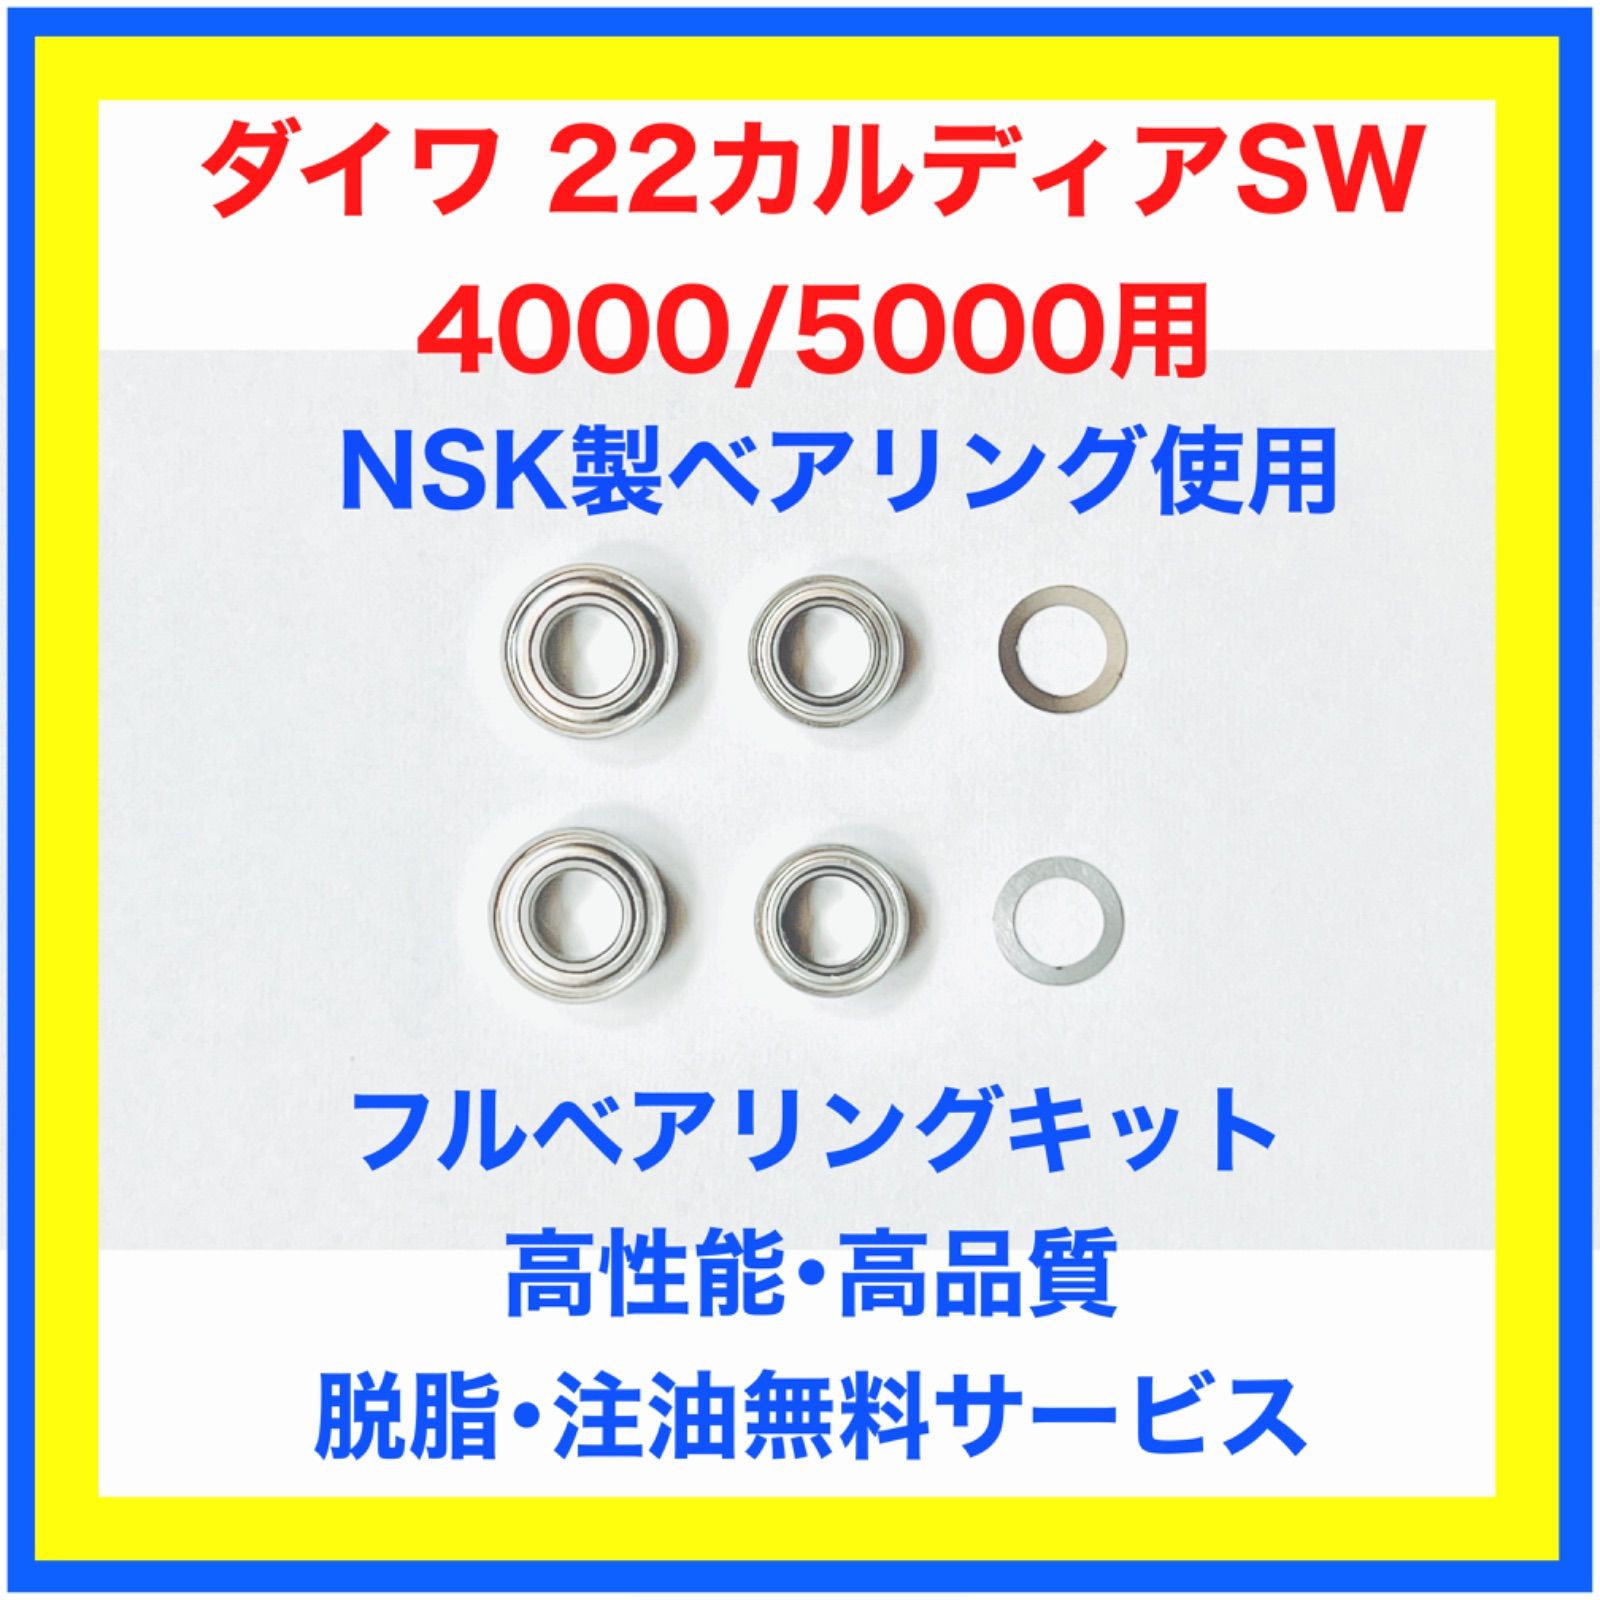 高品質NSK製ダイワ22カルディアSW4000/5000用フルベアリングキット